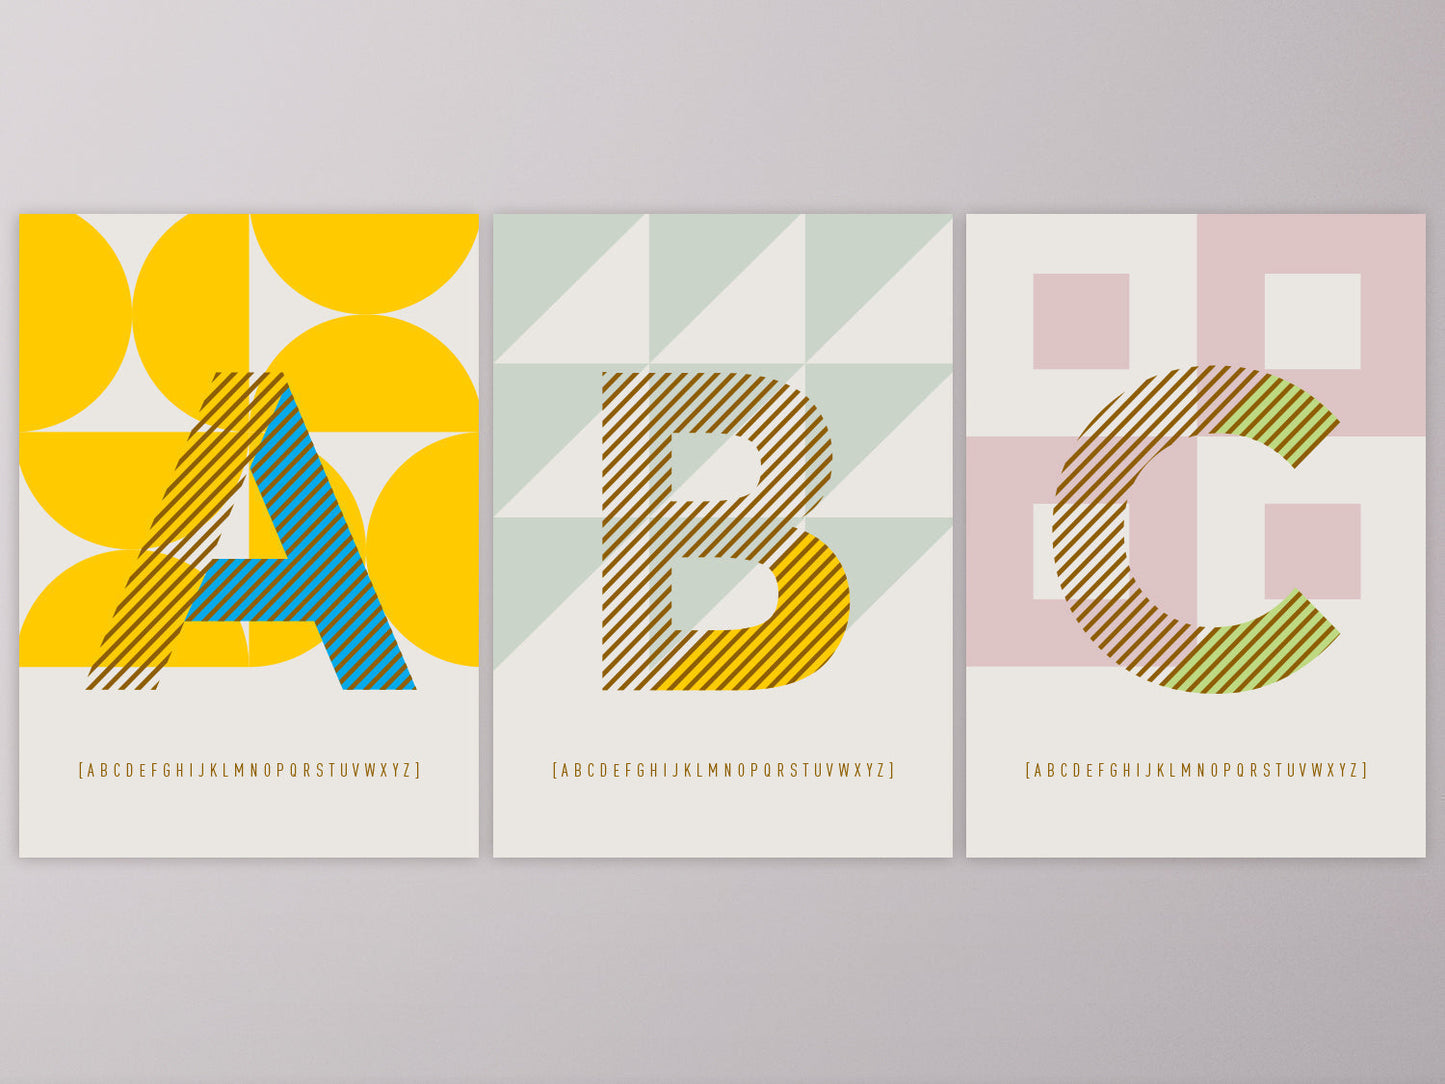 Postkarte Buchstabe K / ABC Karte, Alphabet, Grußkarte, Initial